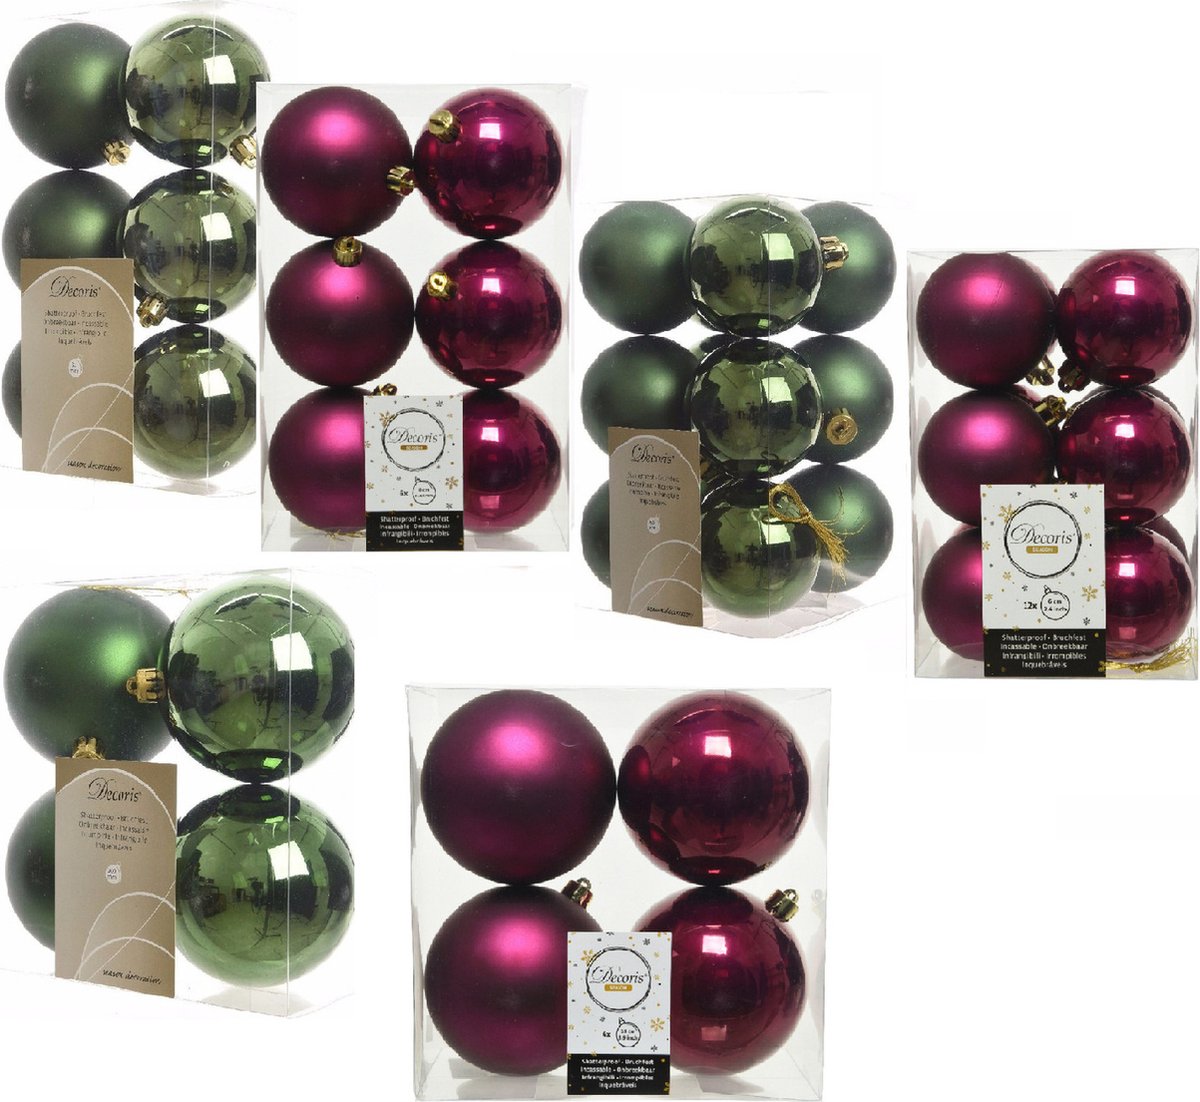 Kerstversiering kunststof kerstballen kleuren mix framboos roze/donkergroen 6-8-10 cm pakket van 44x stuks